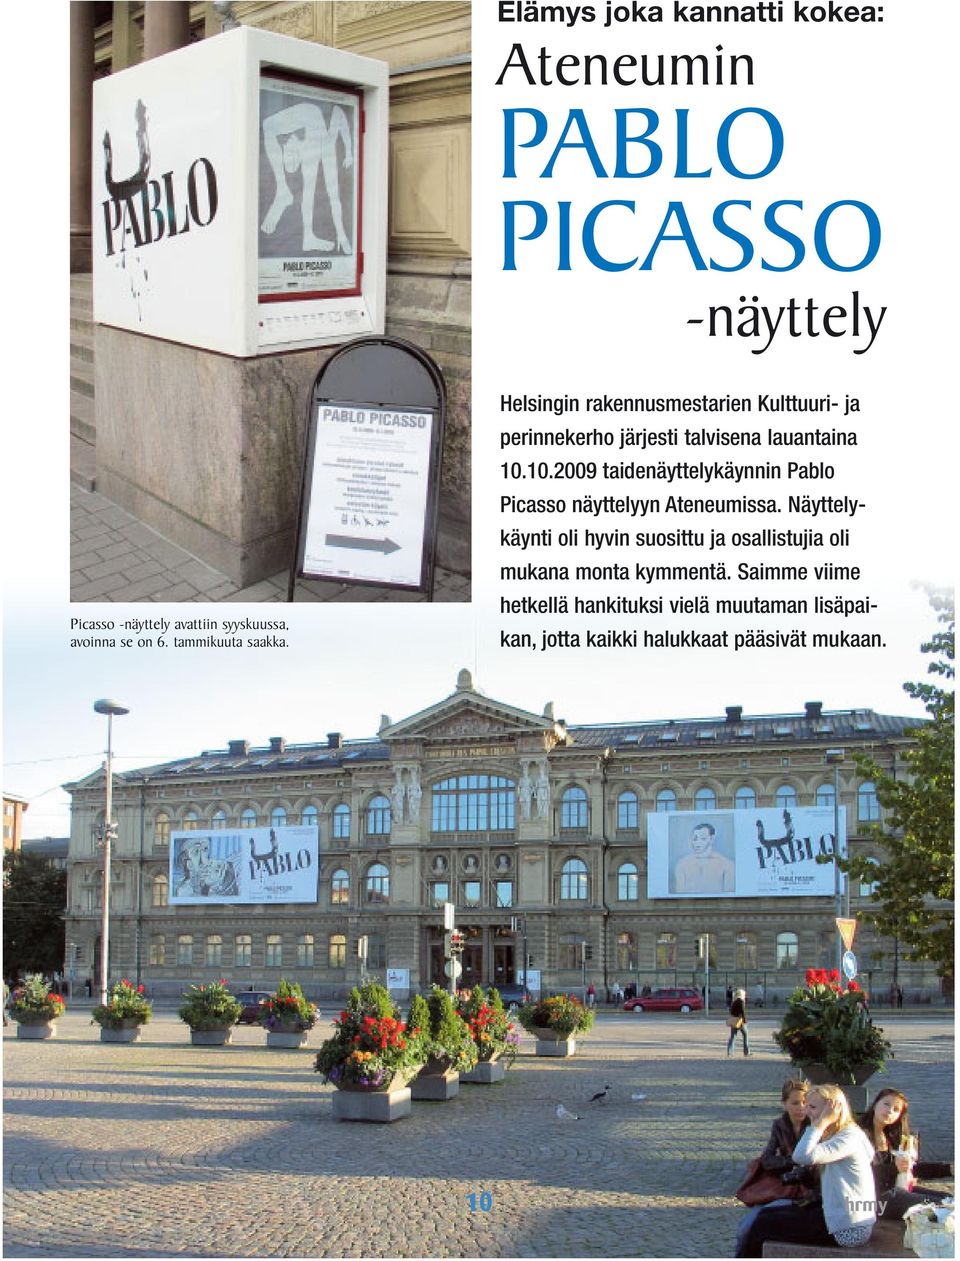 10.2009 taidenäyttelykäynnin Pablo Picasso näyttelyyn Ateneumissa.